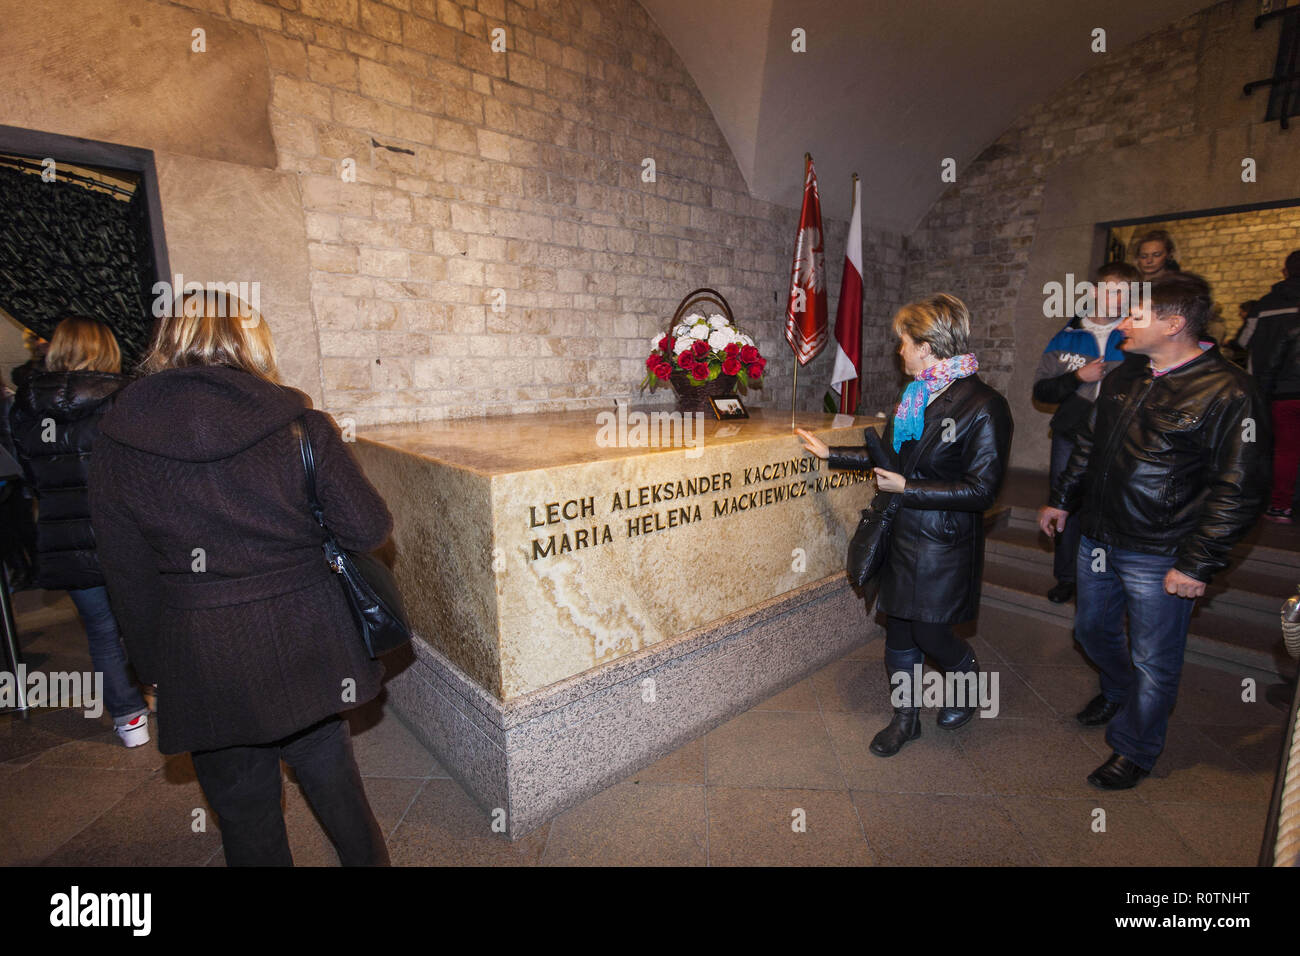 Le sarcophage contenant feu le Président Lech Aleksander Kaczynski et son épouse Maria Mackiewicz-Kaczynska dans la crypte de la cathédrale du Wawel dans Kra Banque D'Images